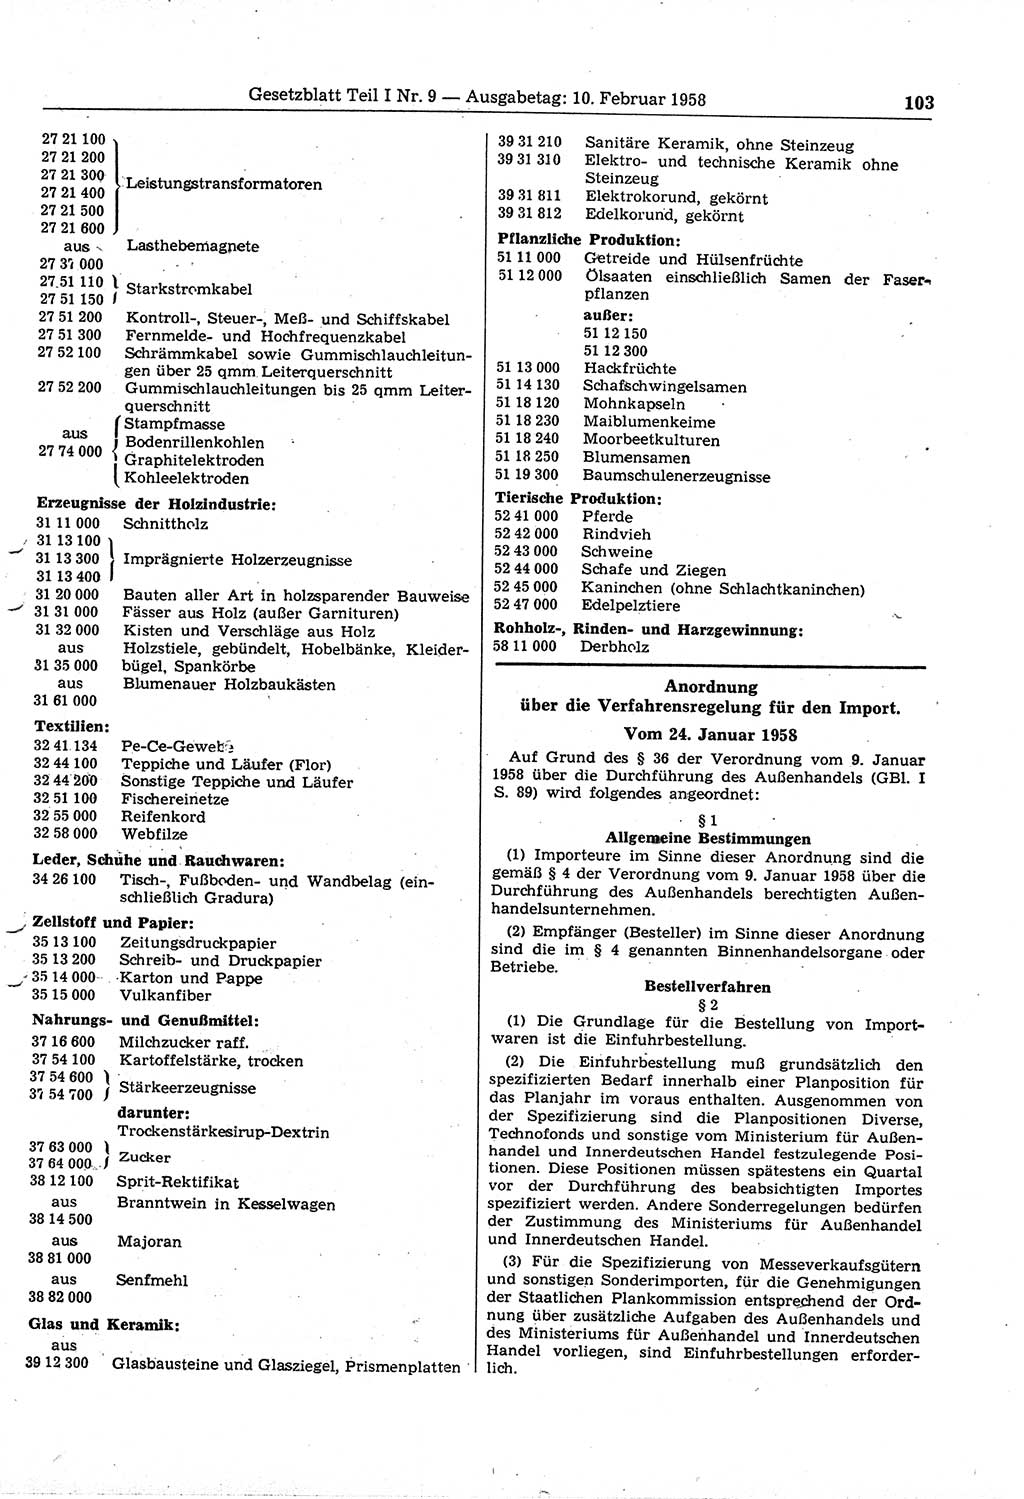 Gesetzblatt (GBl.) der Deutschen Demokratischen Republik (DDR) Teil Ⅰ 1958, Seite 103 (GBl. DDR Ⅰ 1958, S. 103)